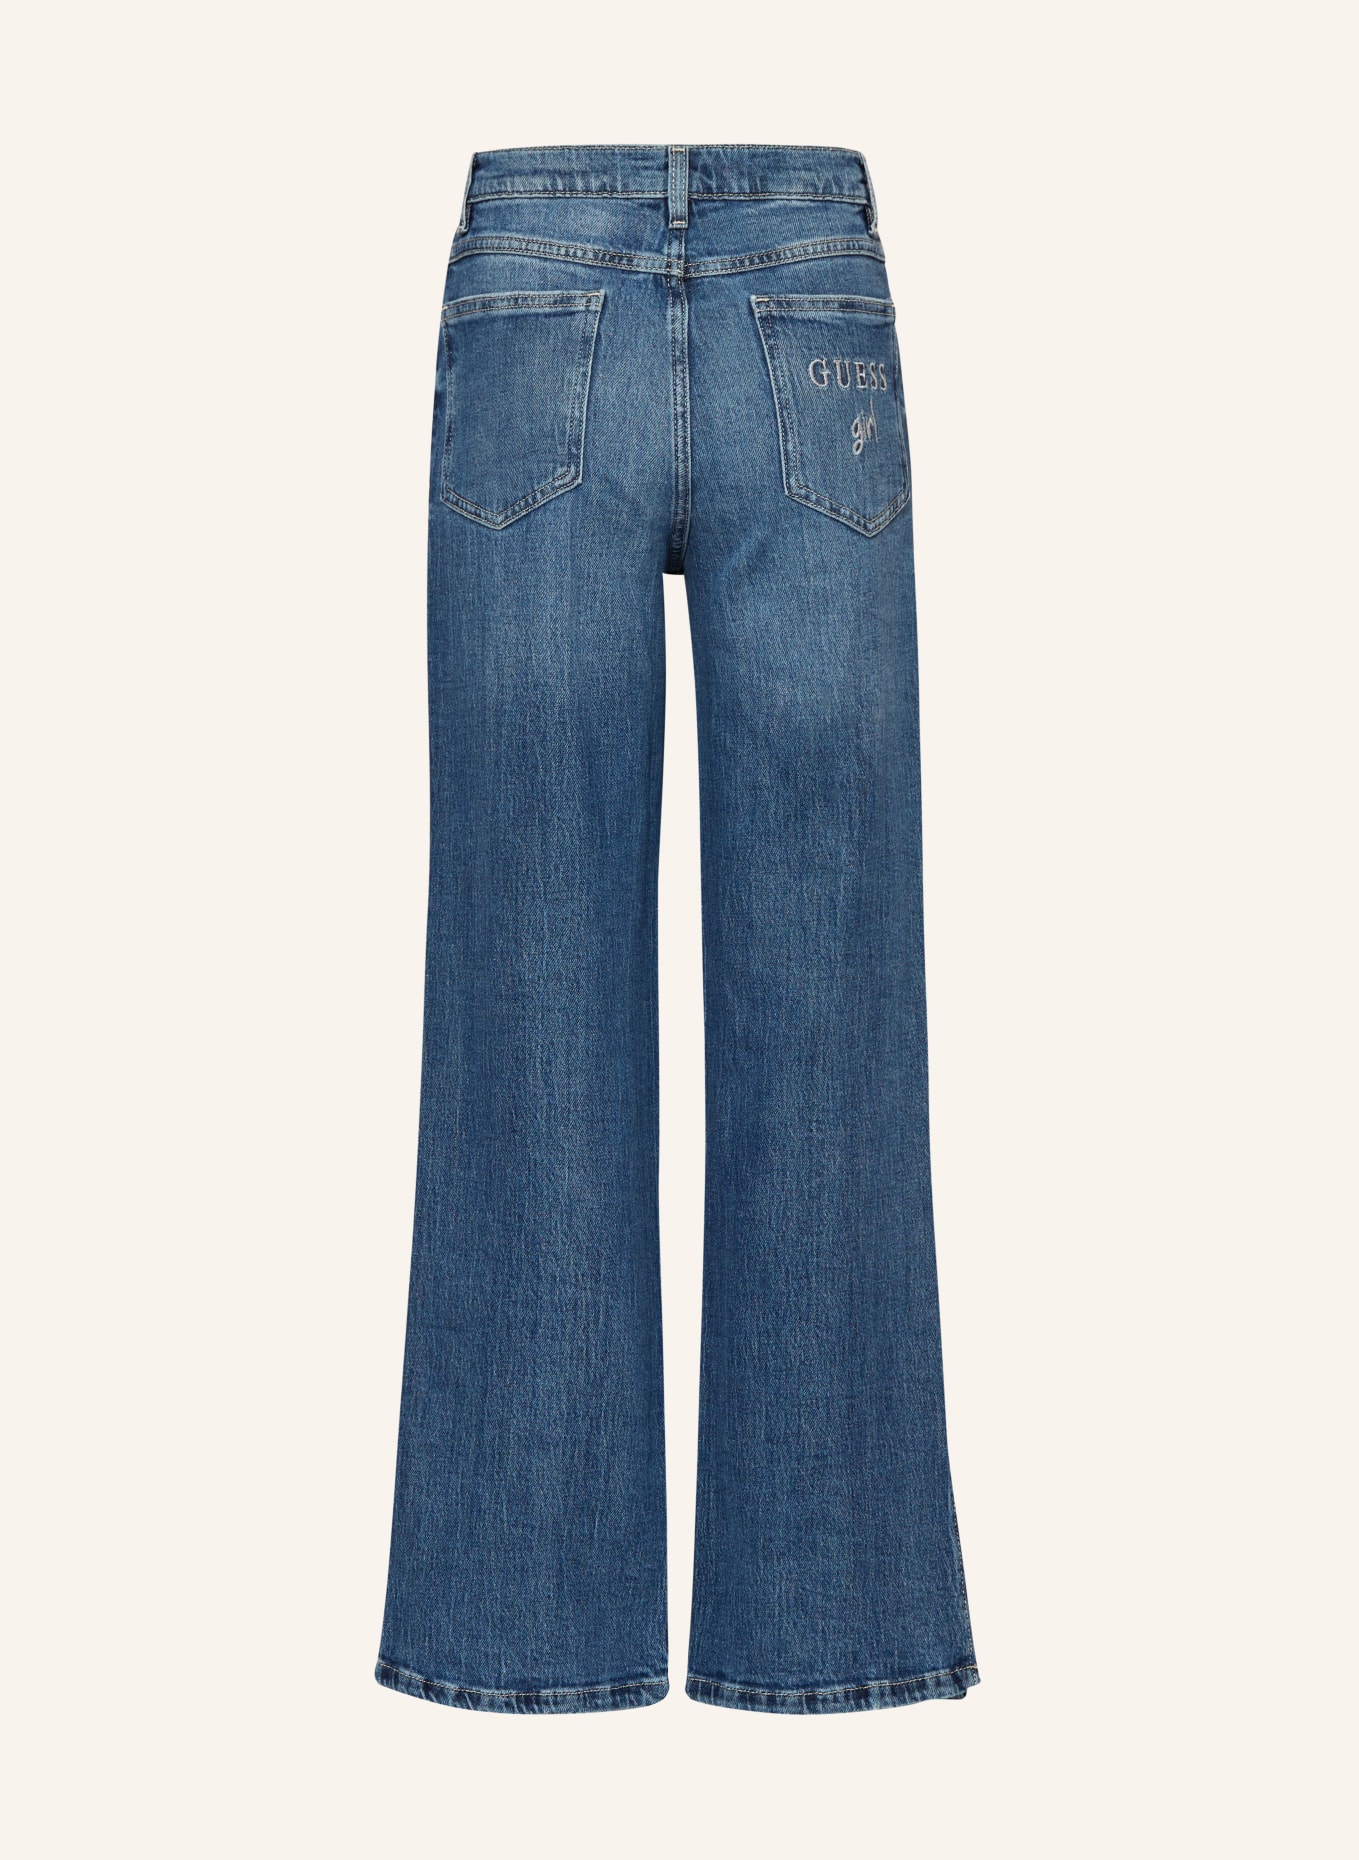 GUESS Jeans mit Schmucksteinen, Farbe: RGDN NEW RIGID DARK WA (Bild 2)